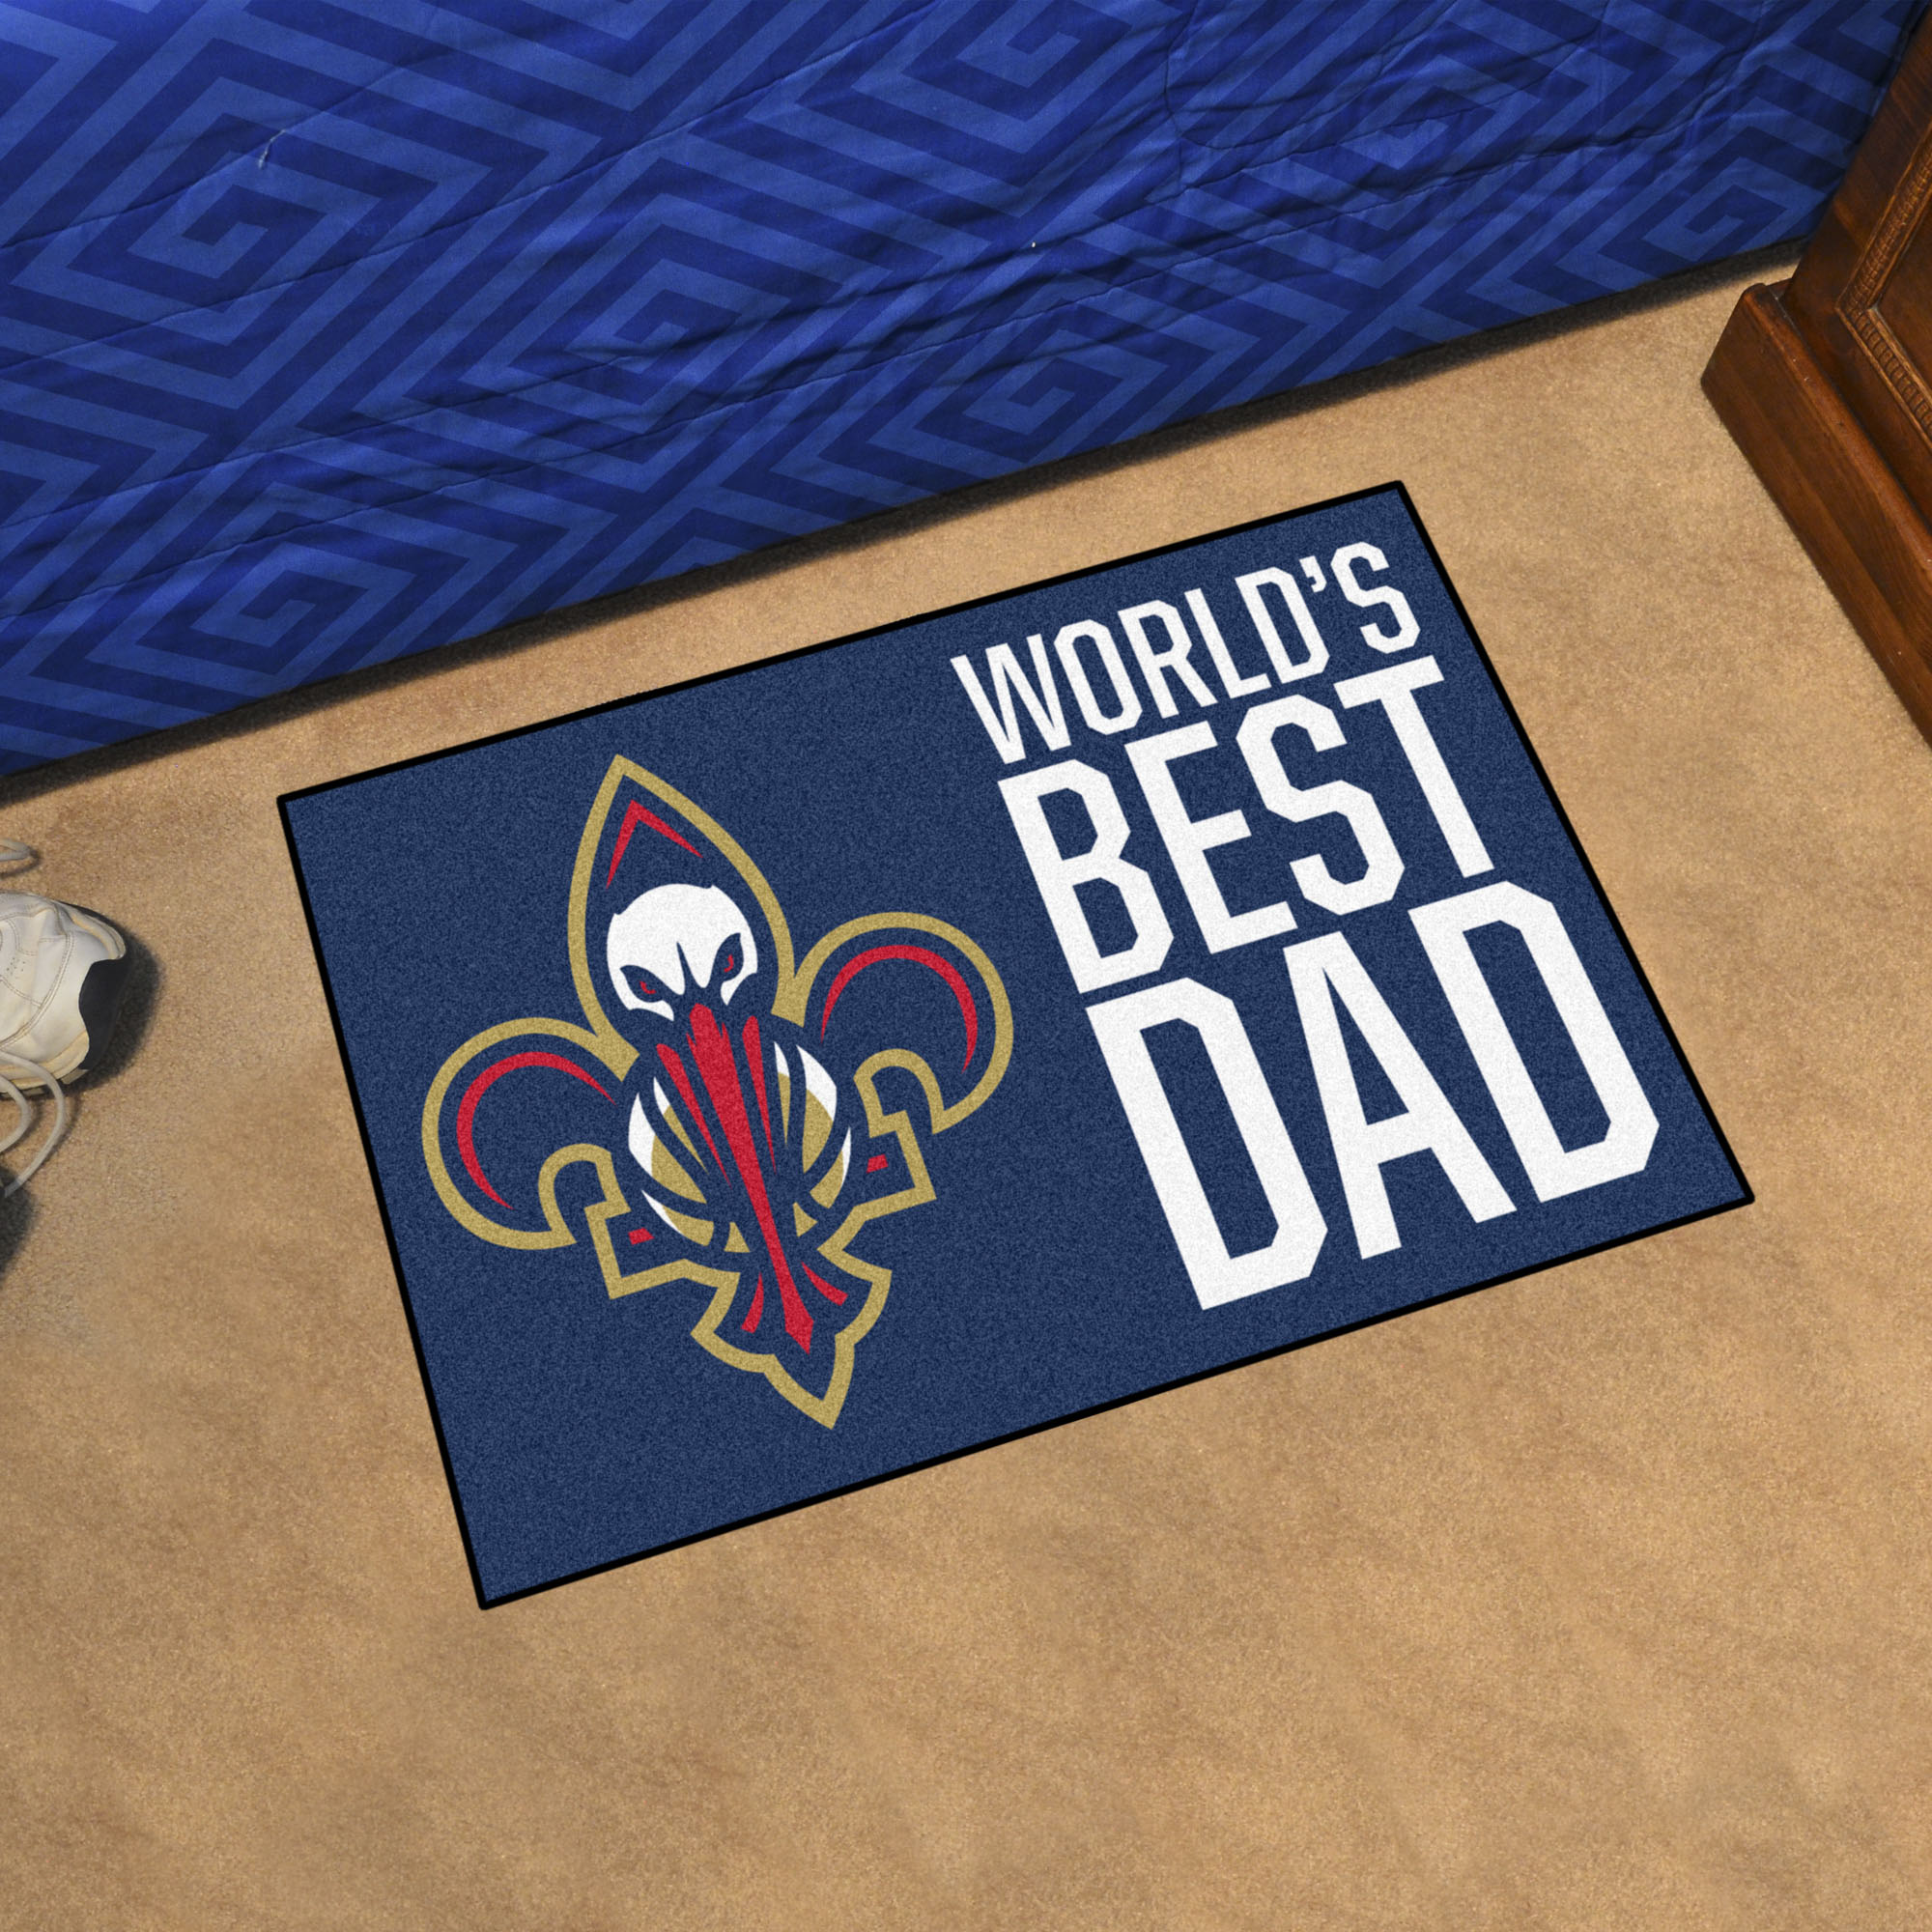 New Orleans Pelicans Pelicans World's Best Dad Starter Doormat - 19x30